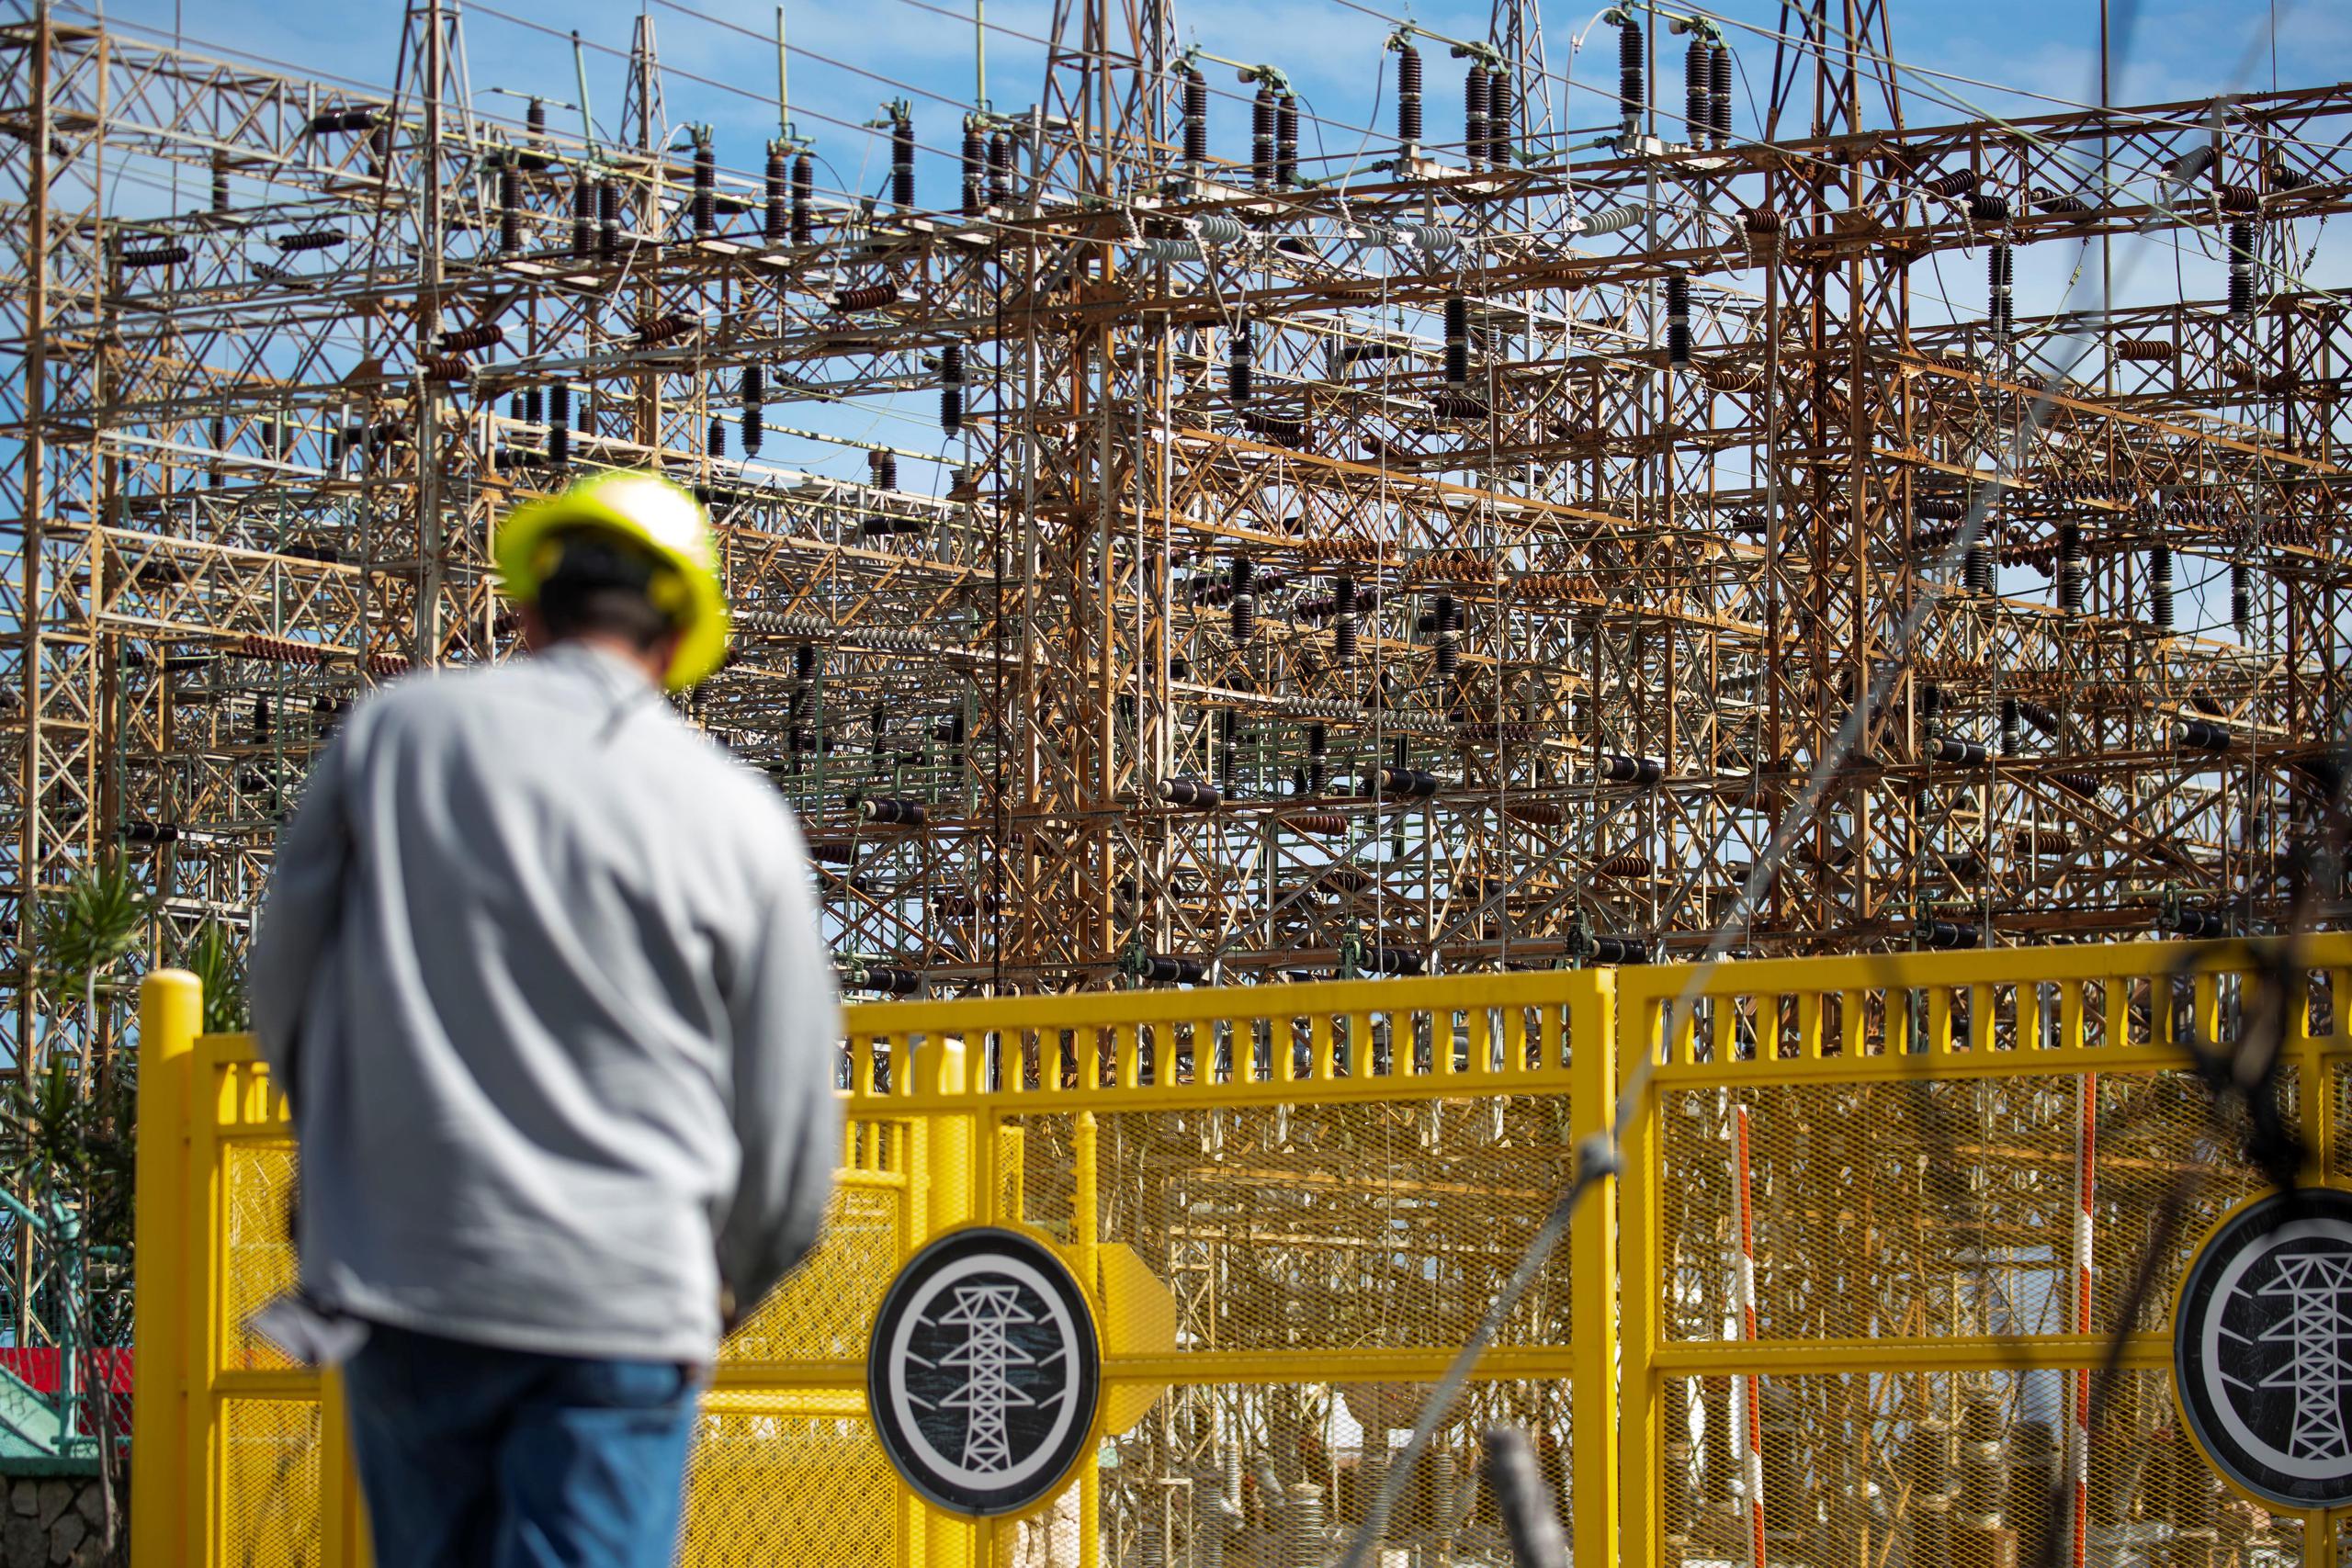 Laboy Rivera recalcó que, por requisito de la ley estatal los proyectos de reconstrucción de la AEE primero tienen que ser aprobados por el Negociado de Energía de Puerto Rico.